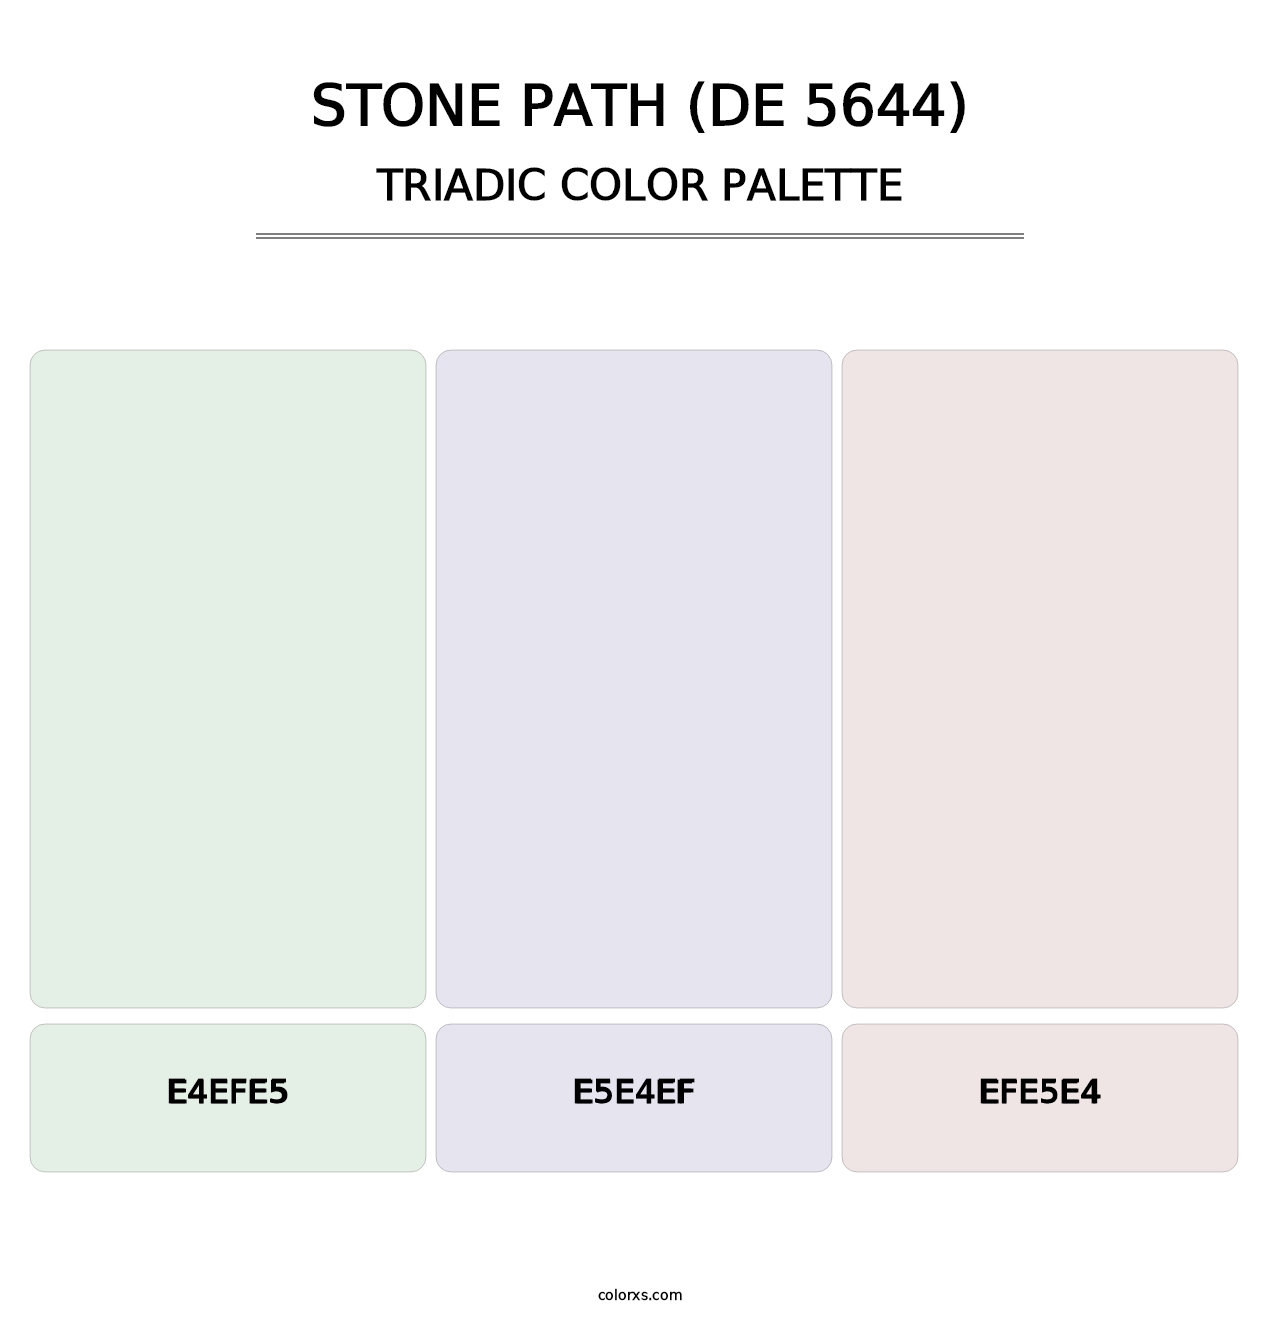 Stone Path (DE 5644) - Triadic Color Palette